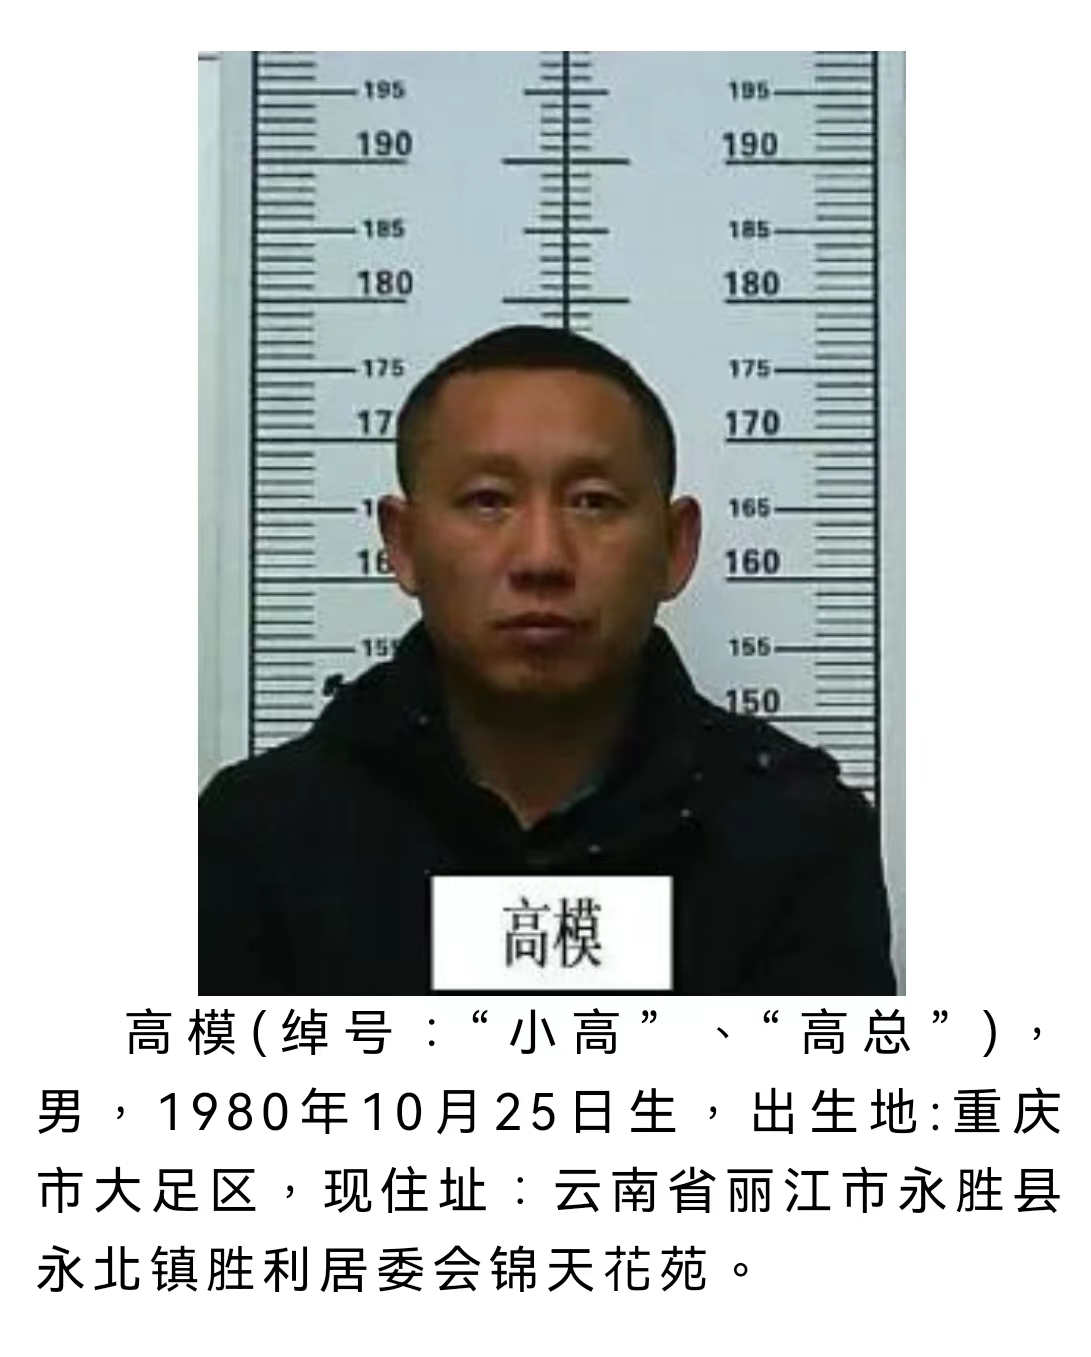 丽江警方公开征集该犯罪团伙犯罪线索 被欺负过的速来举报 (4).jpg